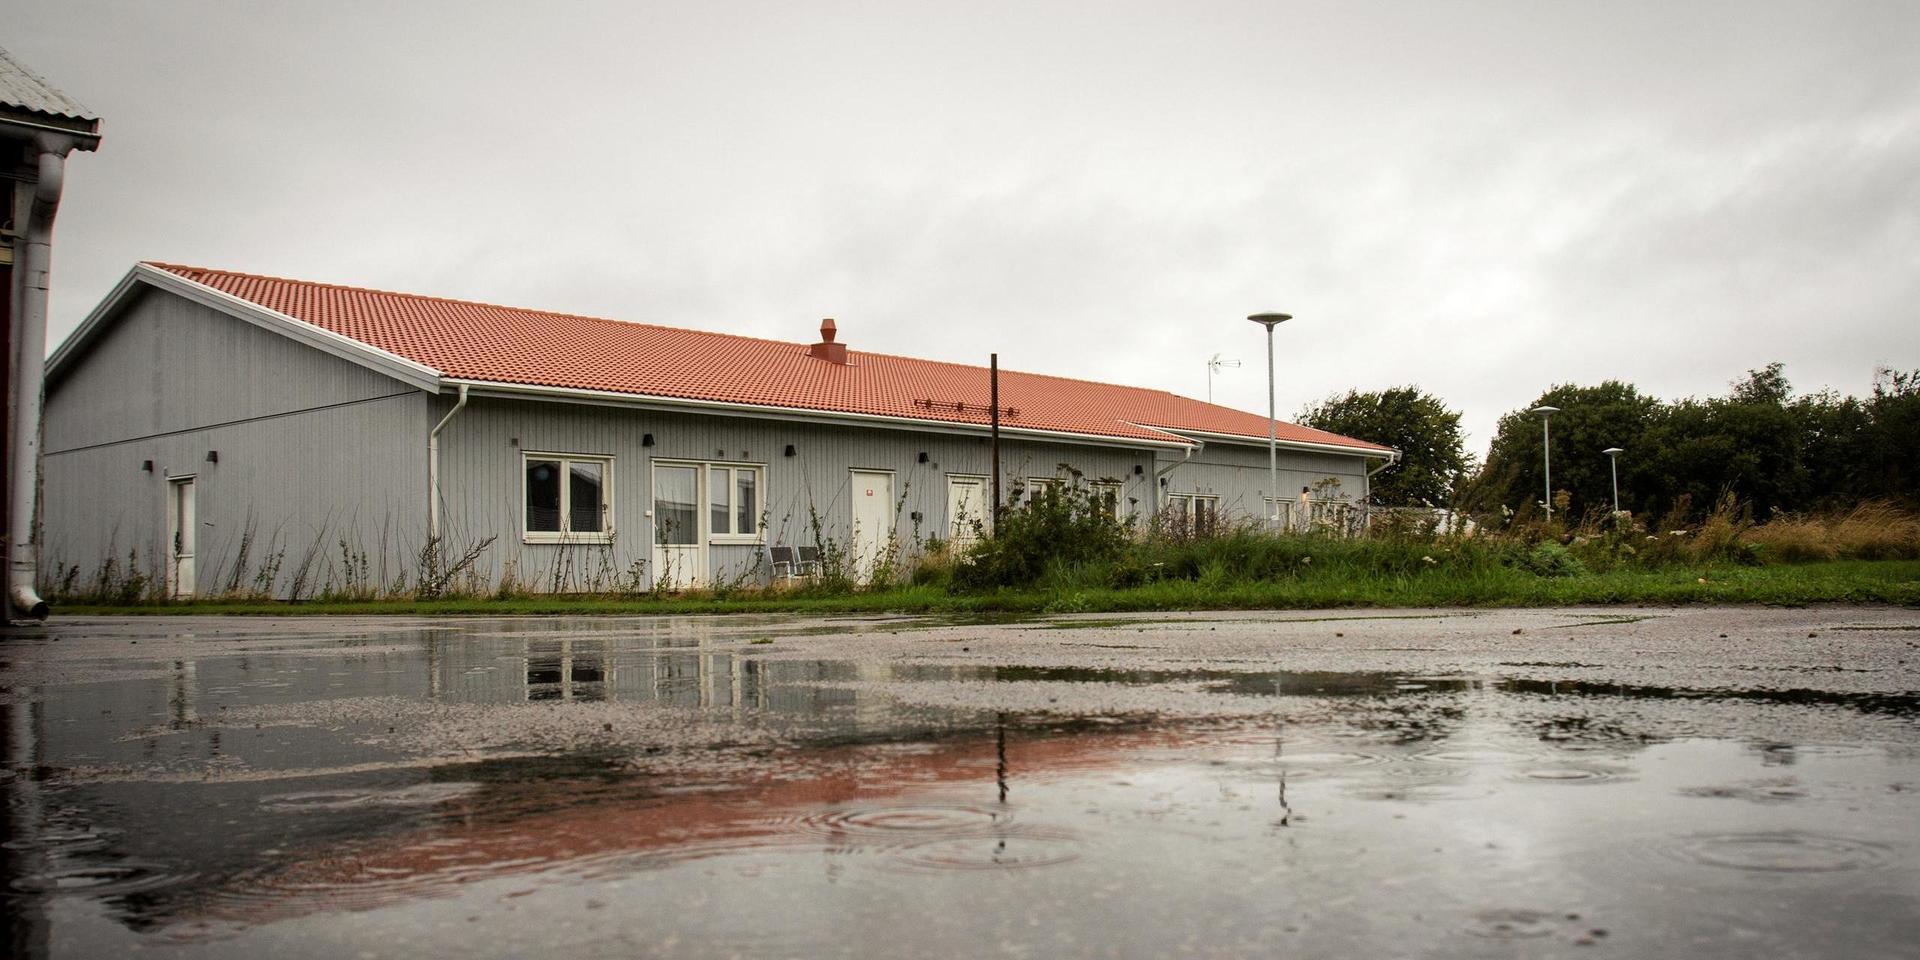 Humanas LSS-boende på Ängelholmsvägen i Laholm har varit i blåsväder länge. Nu riktar Ivo skarp kritik mot vårdbolaget och dess verksamheter.